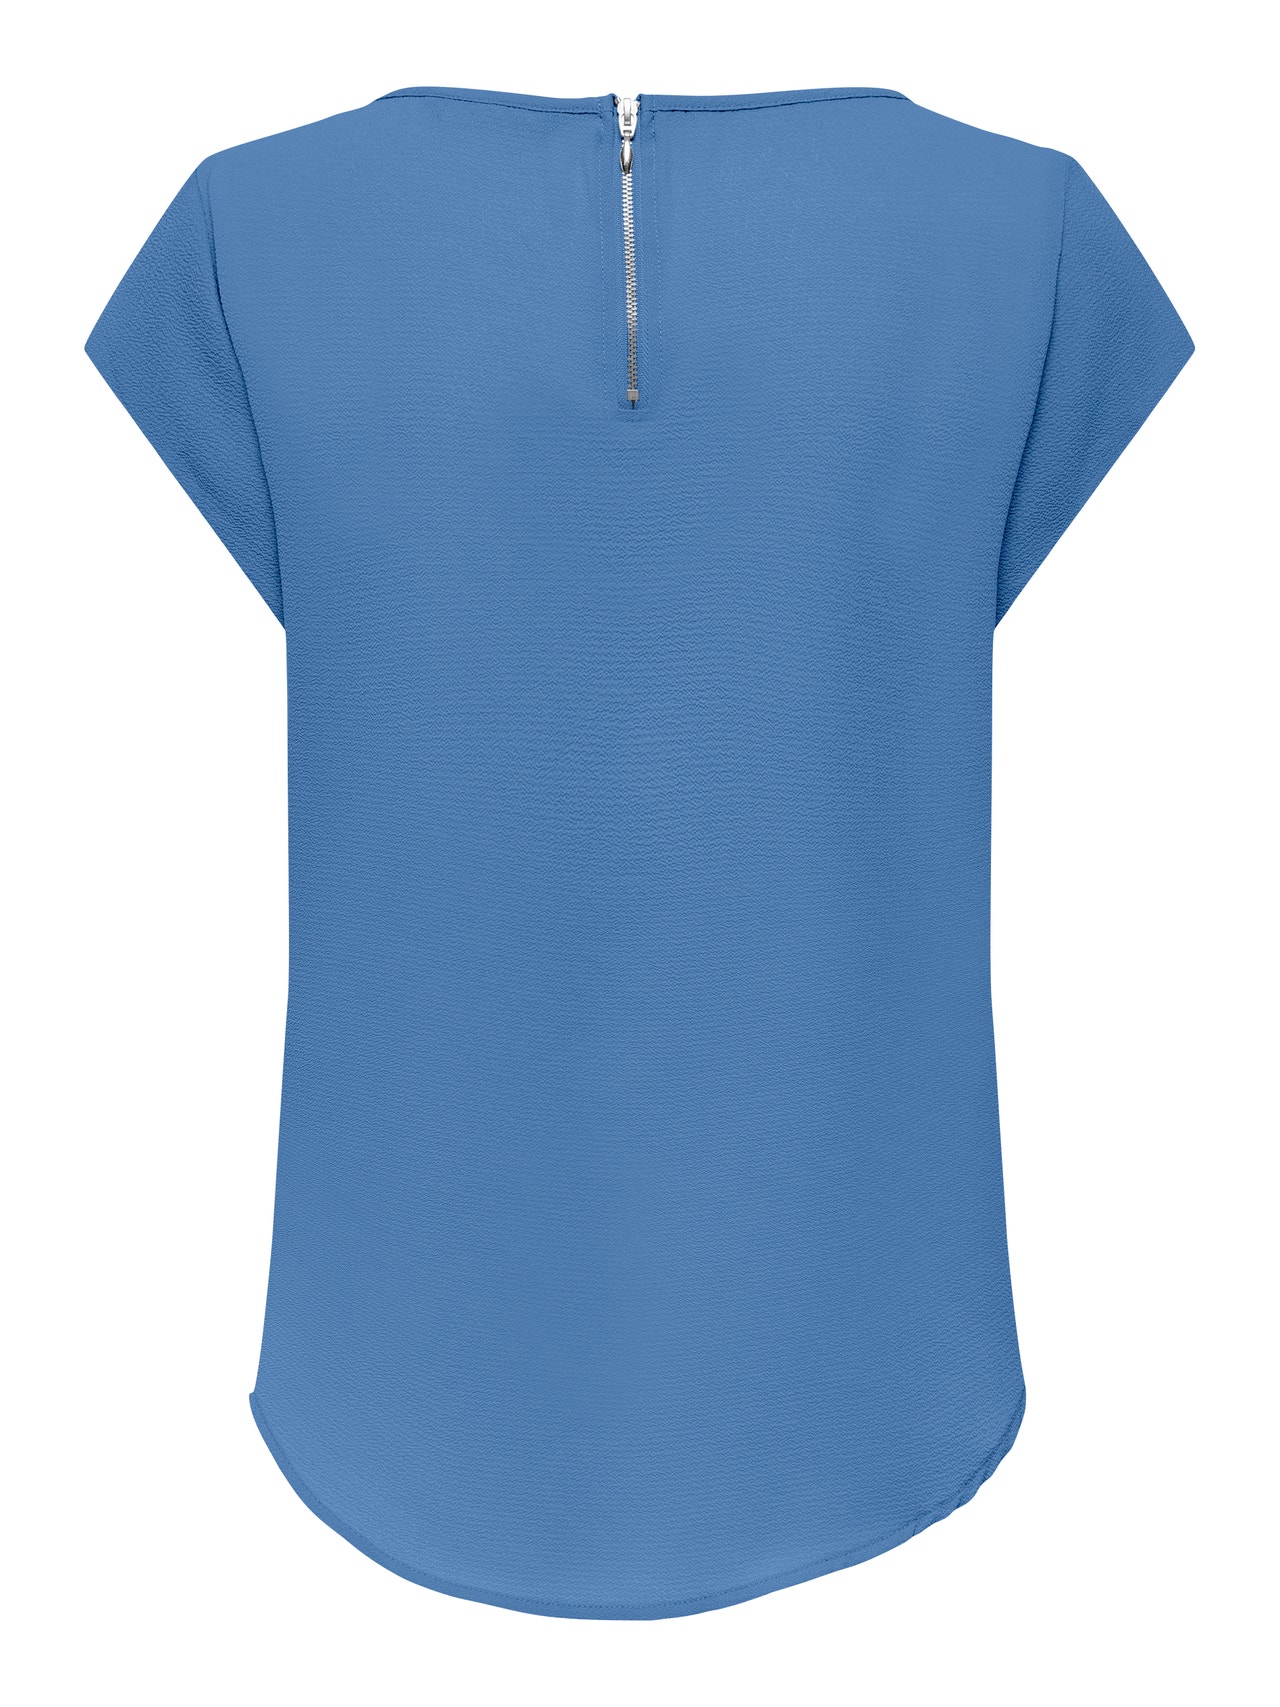 ONLY Loose Short Sleeved Top -Blue Yonder - 15142784